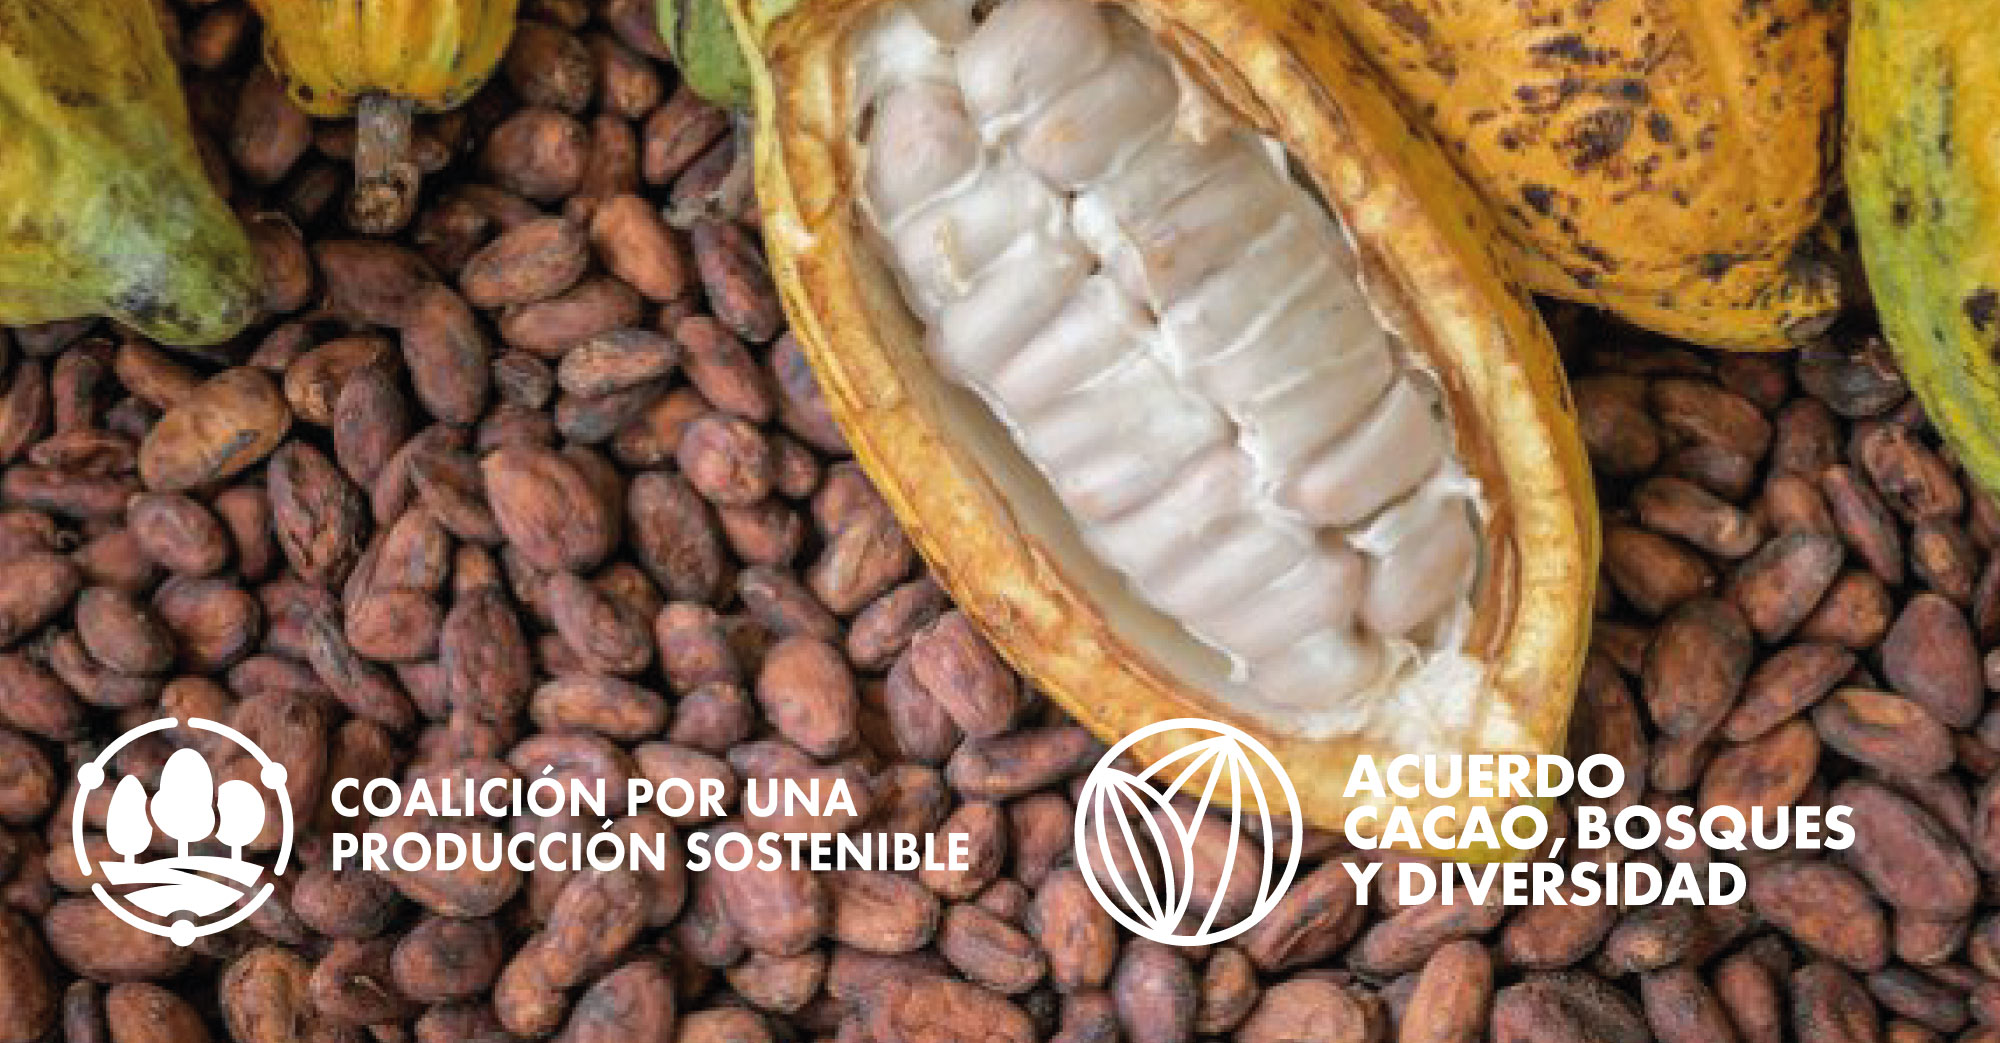 Primera reunión de miembros implementadores del Acuerdo Cacao, Bosques y Diversidad